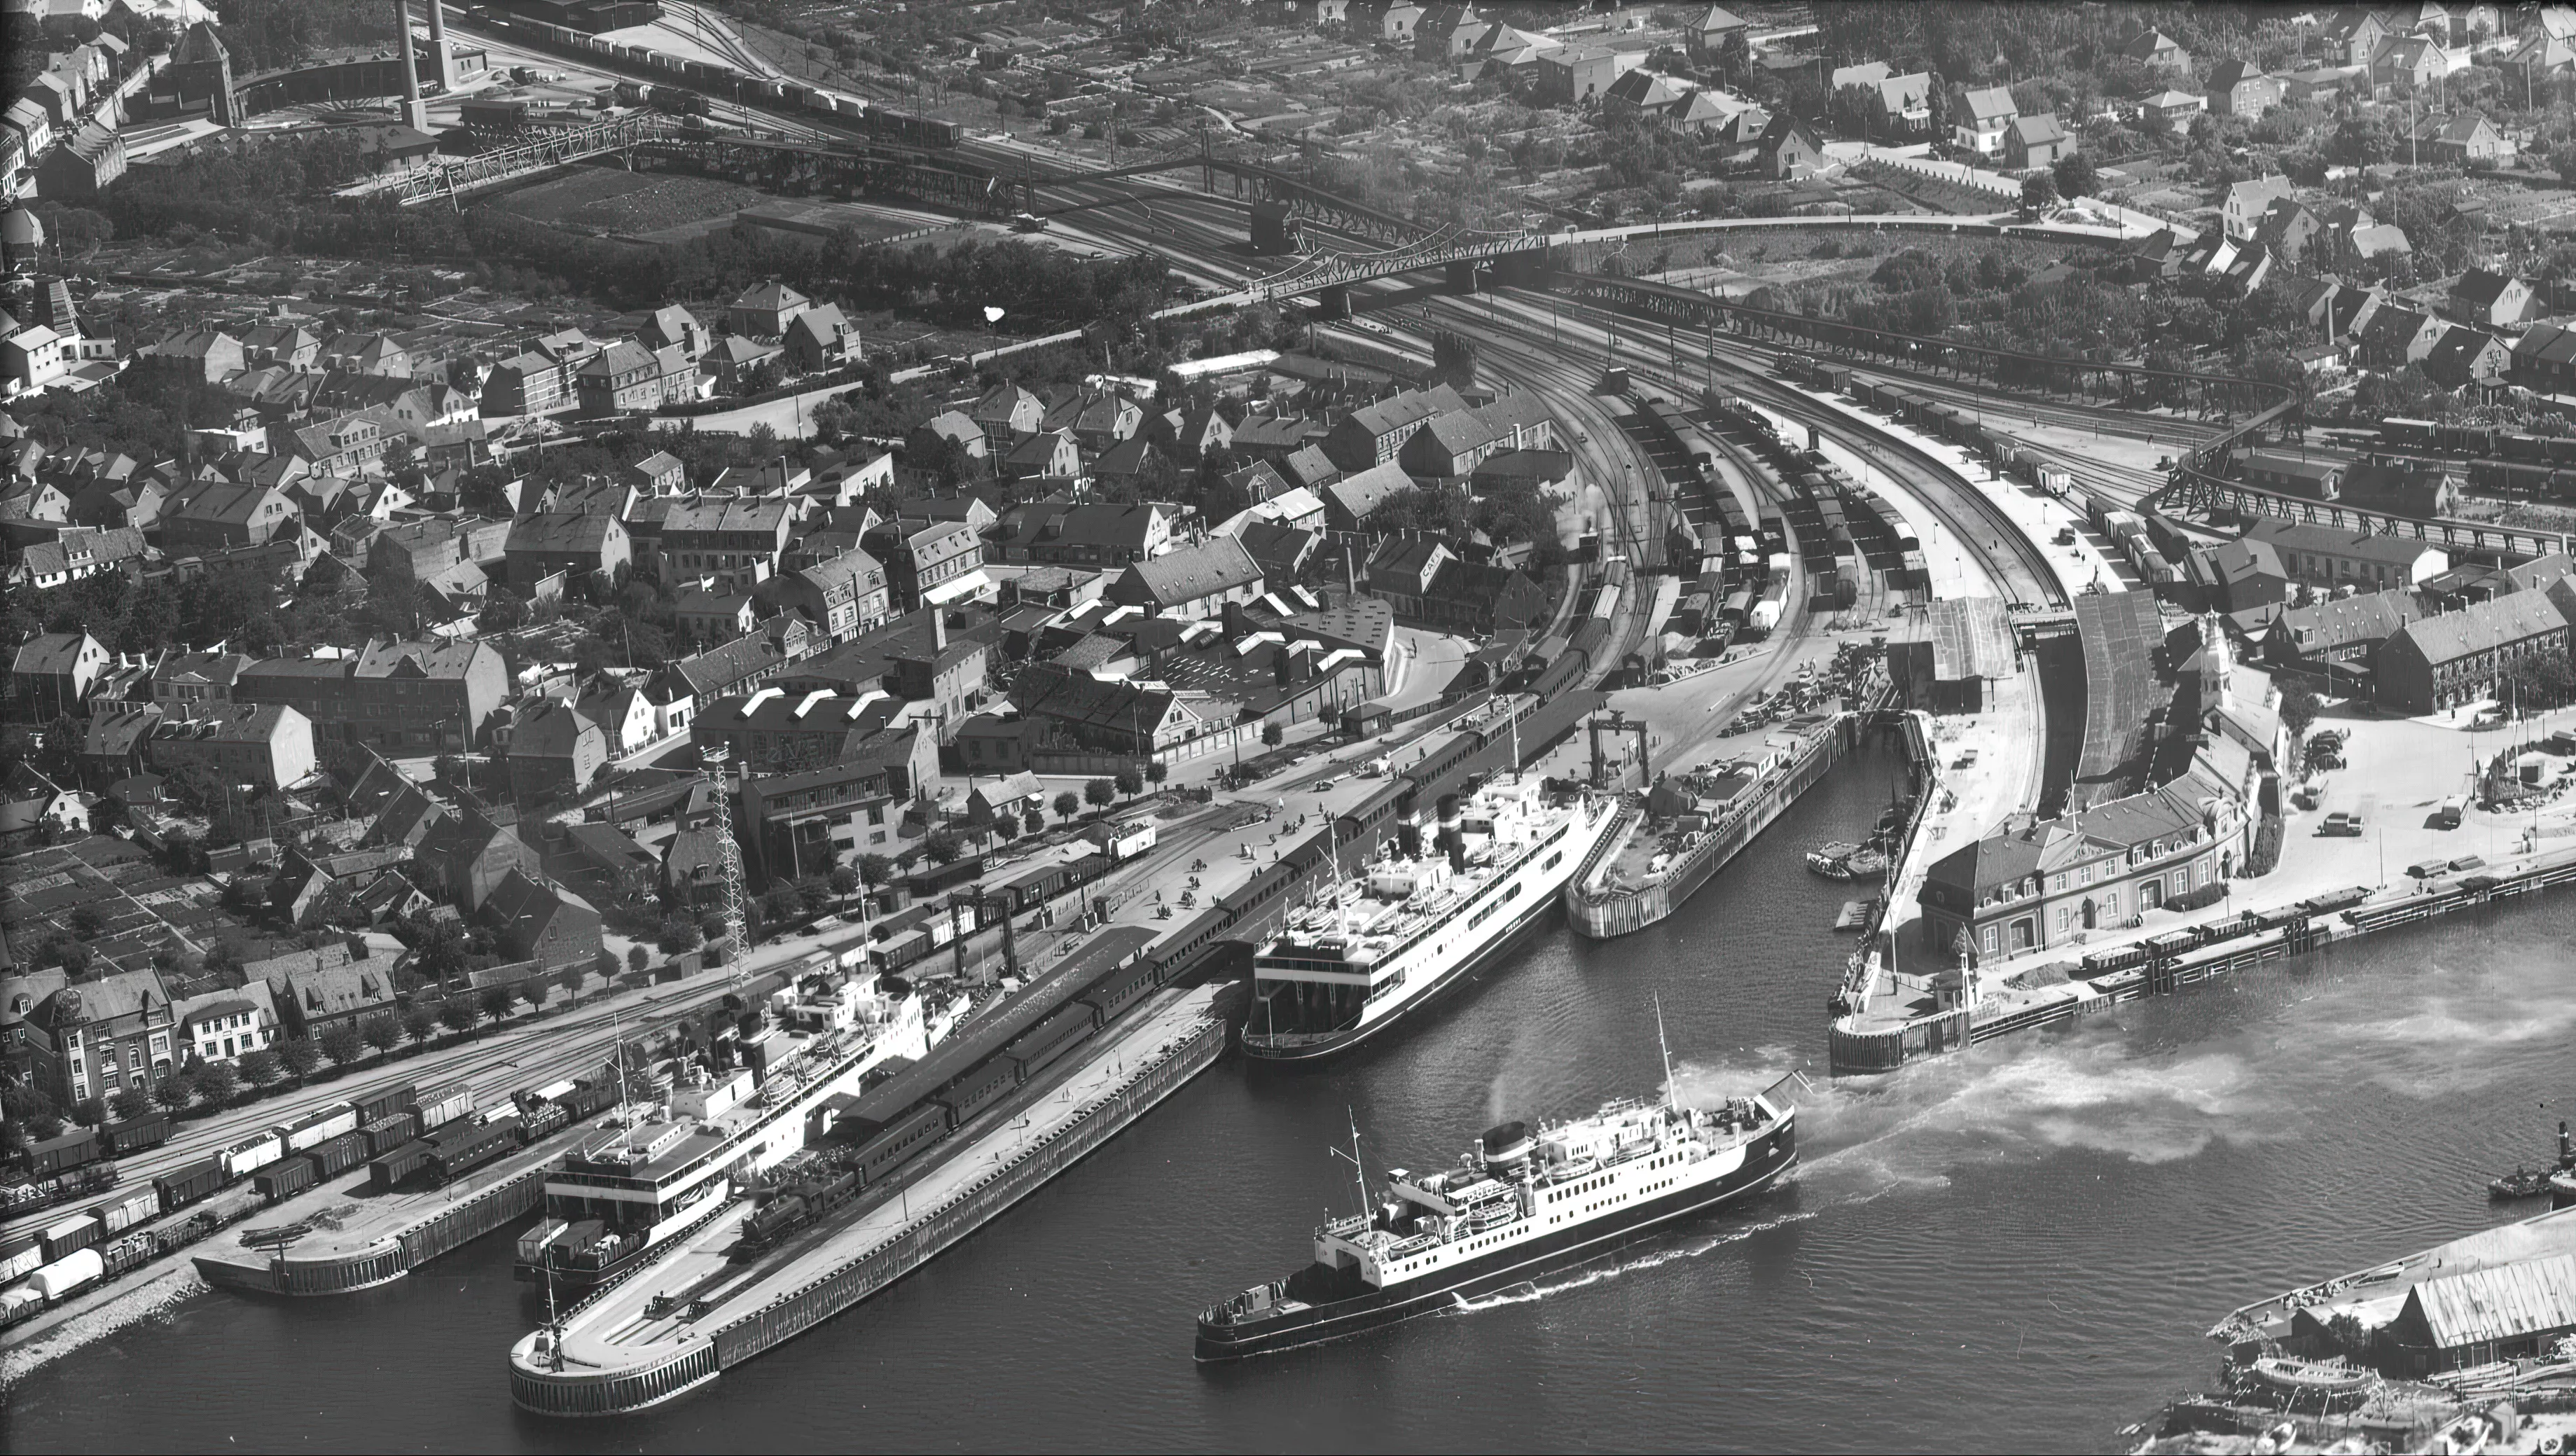 Billede af Korsør Station med færgen "Nyborg" i havn og færgen "Freia" sejlende forbi.